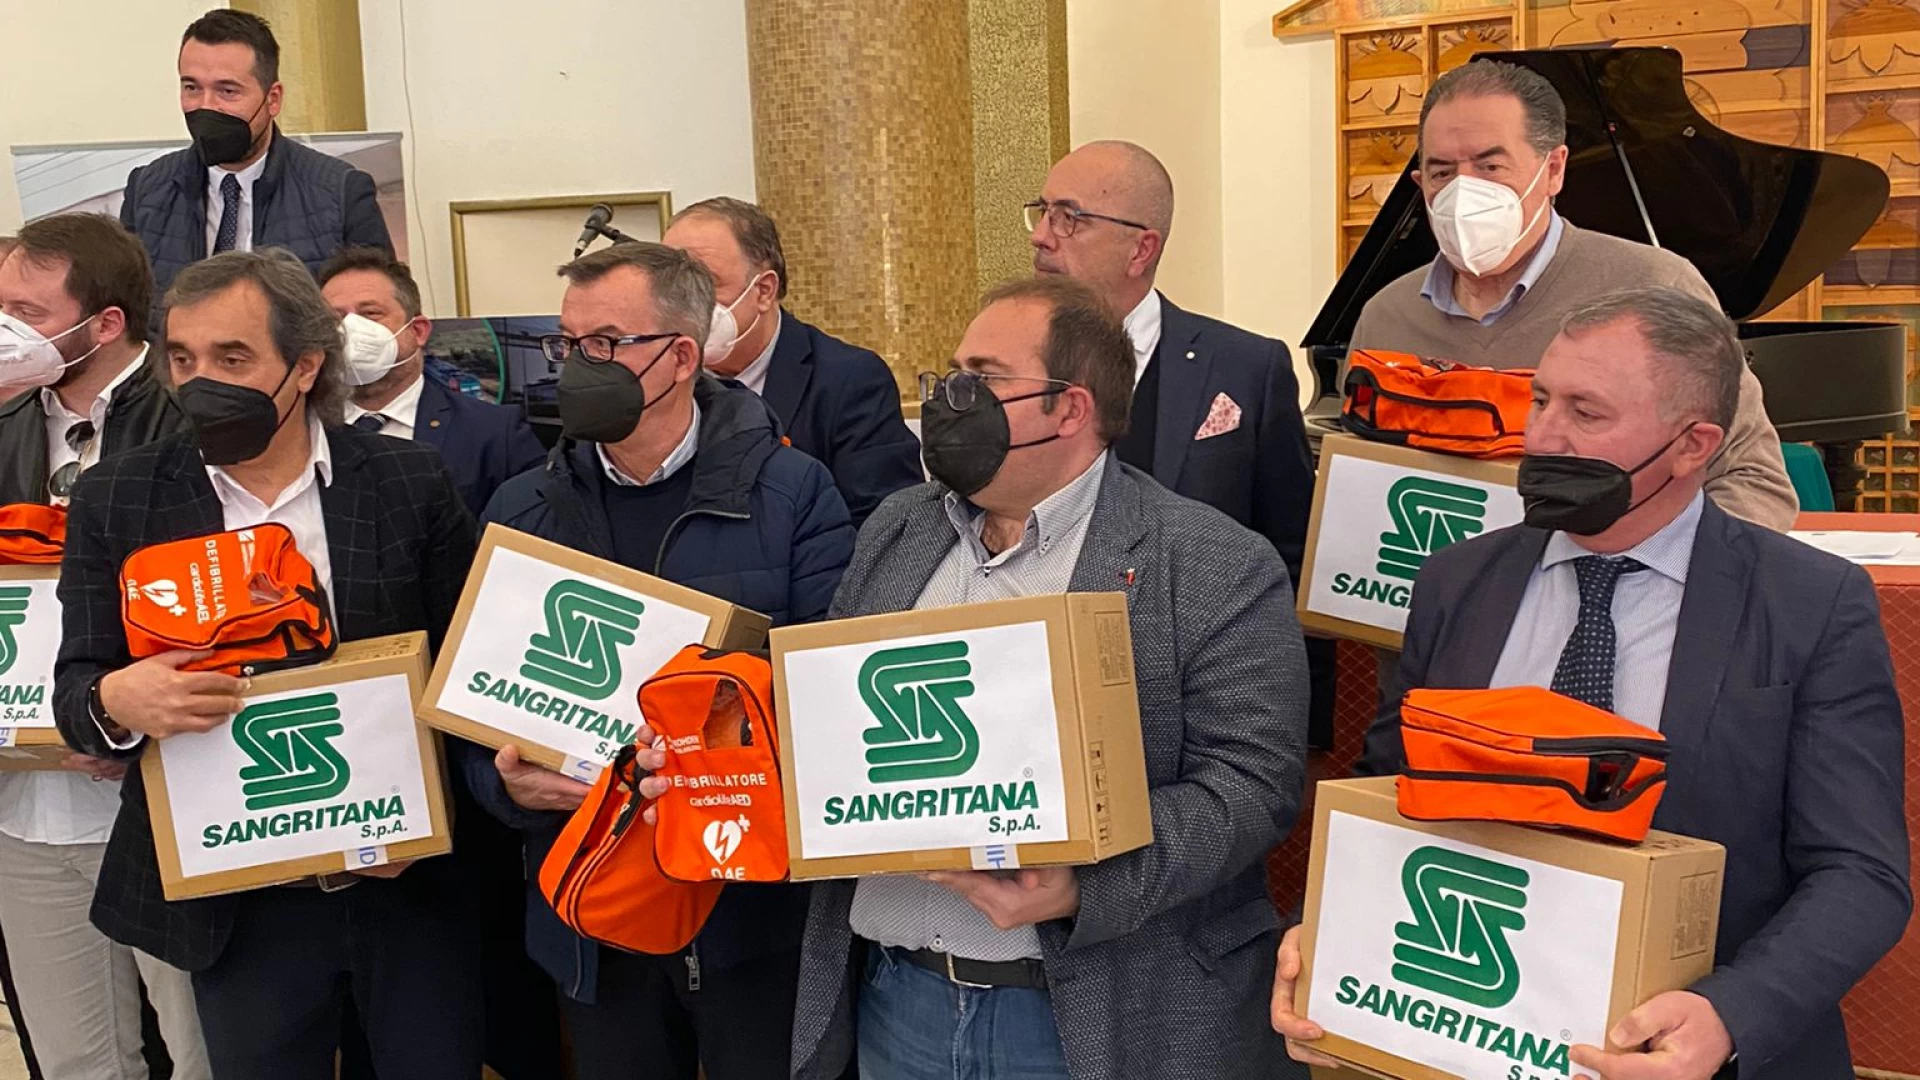 Lanciano: "La Sangritana" consegna defibrillatori ai sindaci del territorio. Uno strumento salvavita anche per Castel Di Sangro